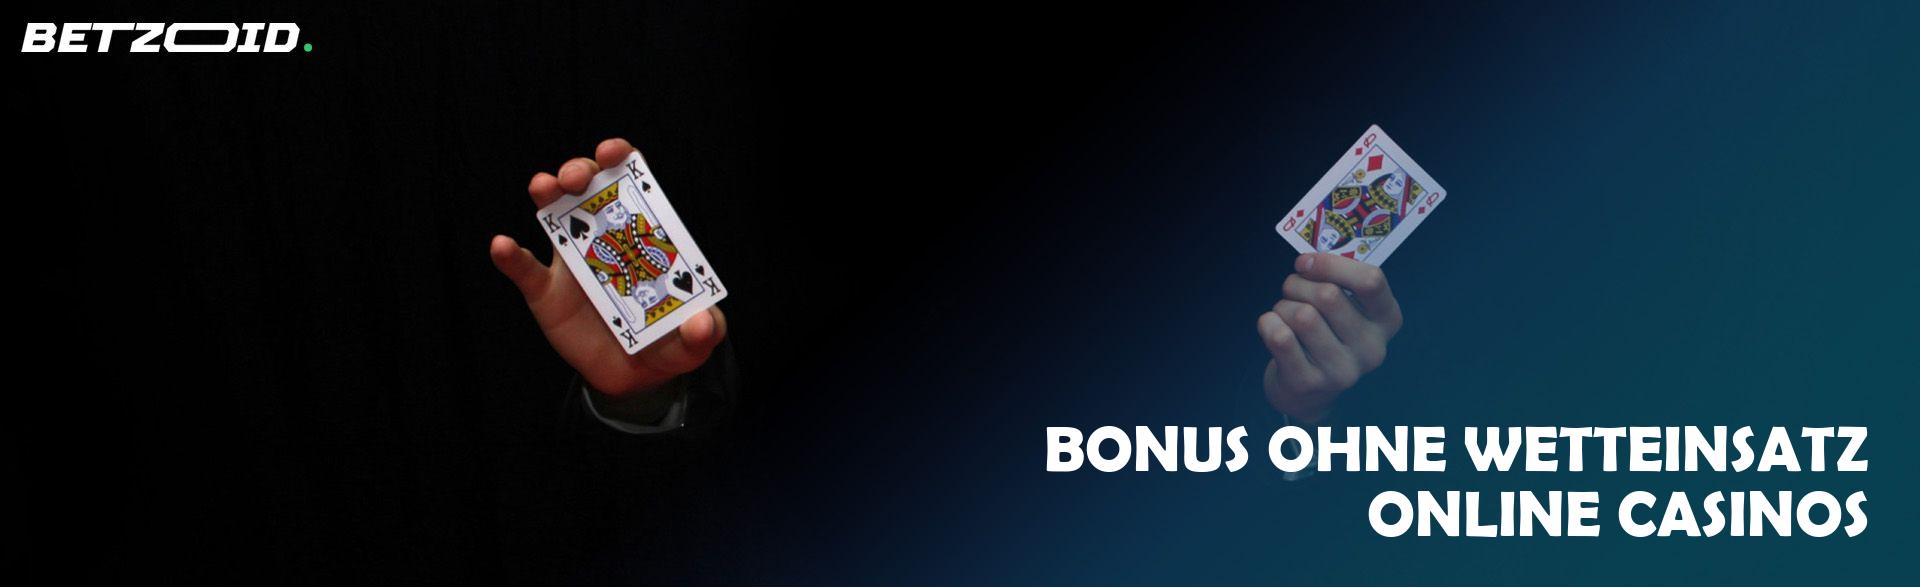 Bonus ohne Wetteinsatz Online Casinos.